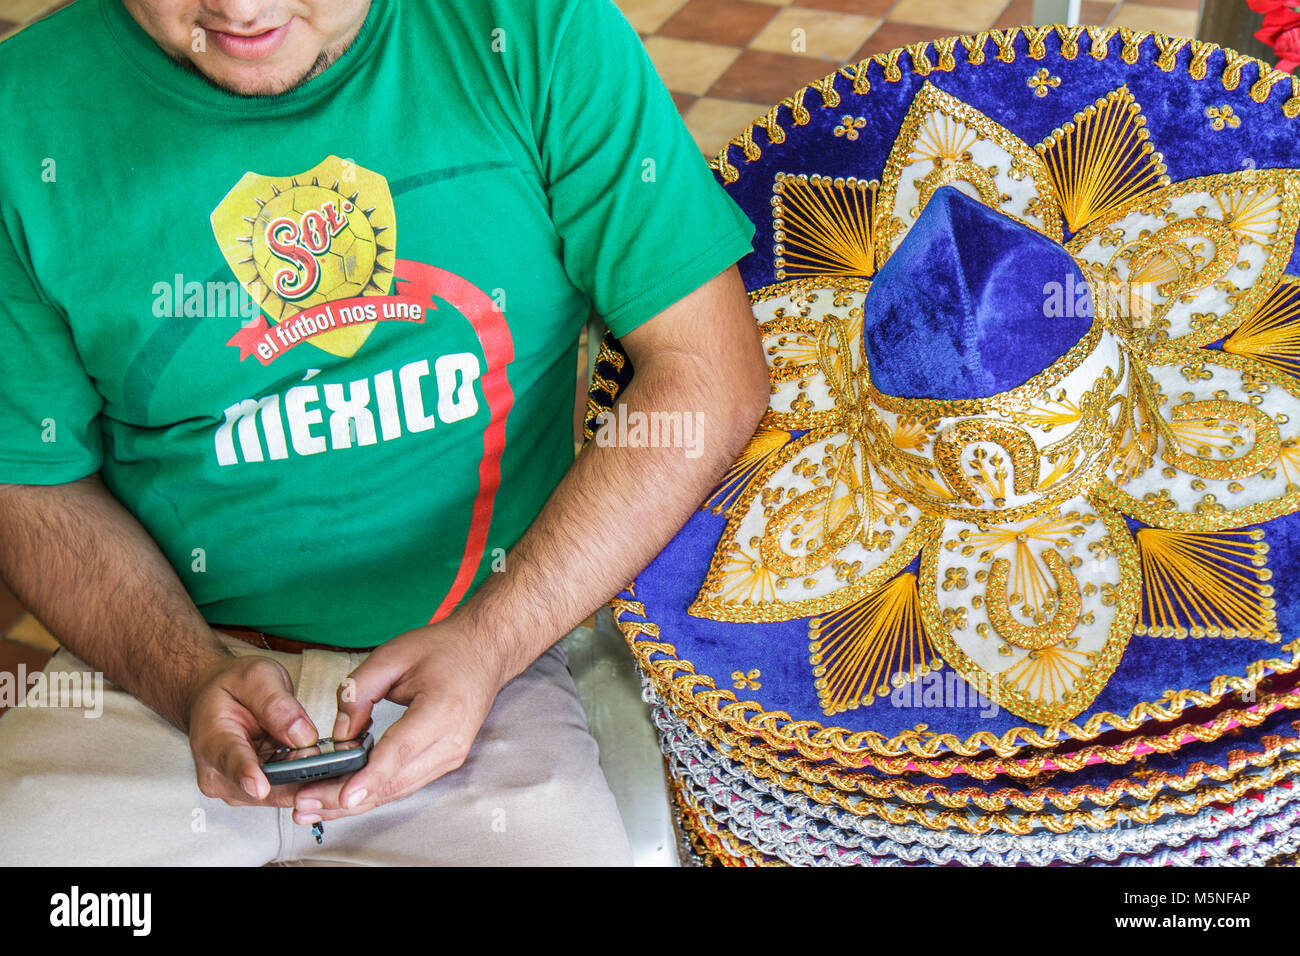 Cancun Messico,Messico,Mercado,mercato,shopping shopping shopping shopping negozi di vendita,negozi di negozi business, negozio di articoli da regalo, souvenir, cappello mariachi,finco Foto Stock